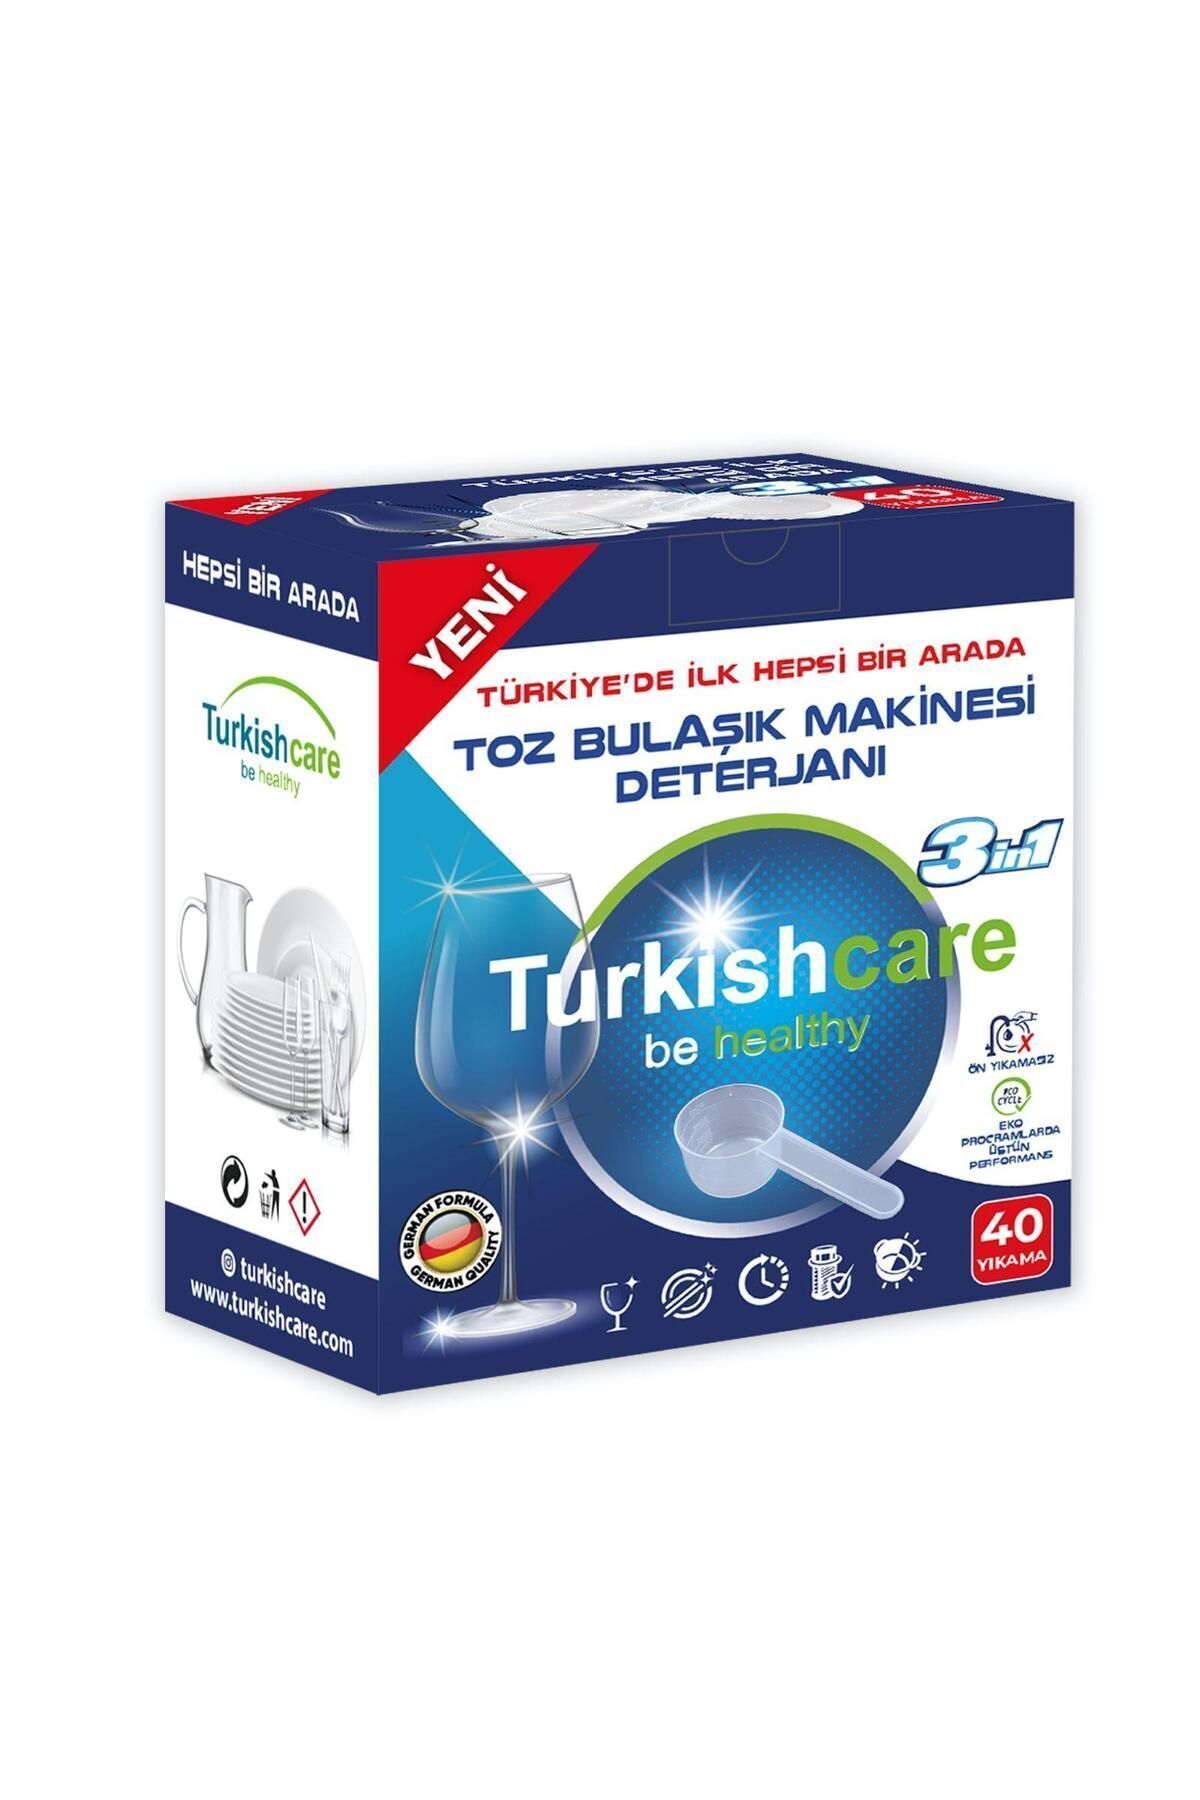 Turkishcare Ekonomik Hepsi Bir Arada Bulaşık Makinesi Tablet Deterjanı Toz 40 Yıkama